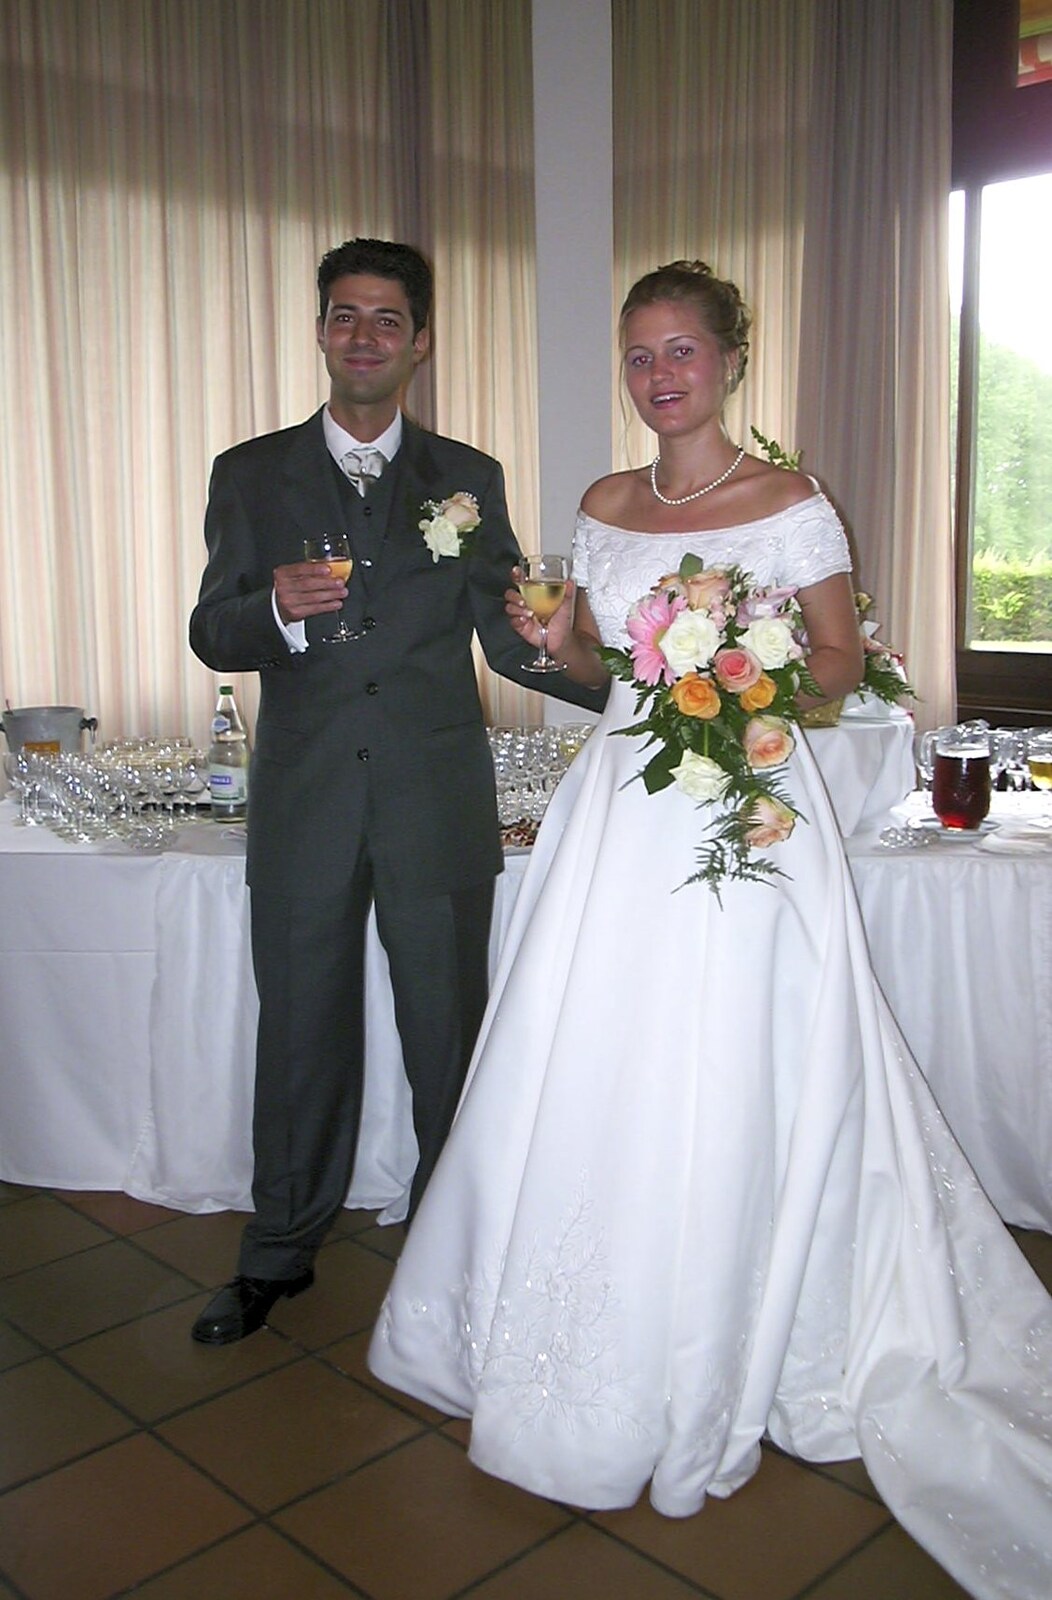 Luigi and Elisa from Elisa and Luigi's Wedding, Carouge, Geneva, Switzerland - 20th July 2001